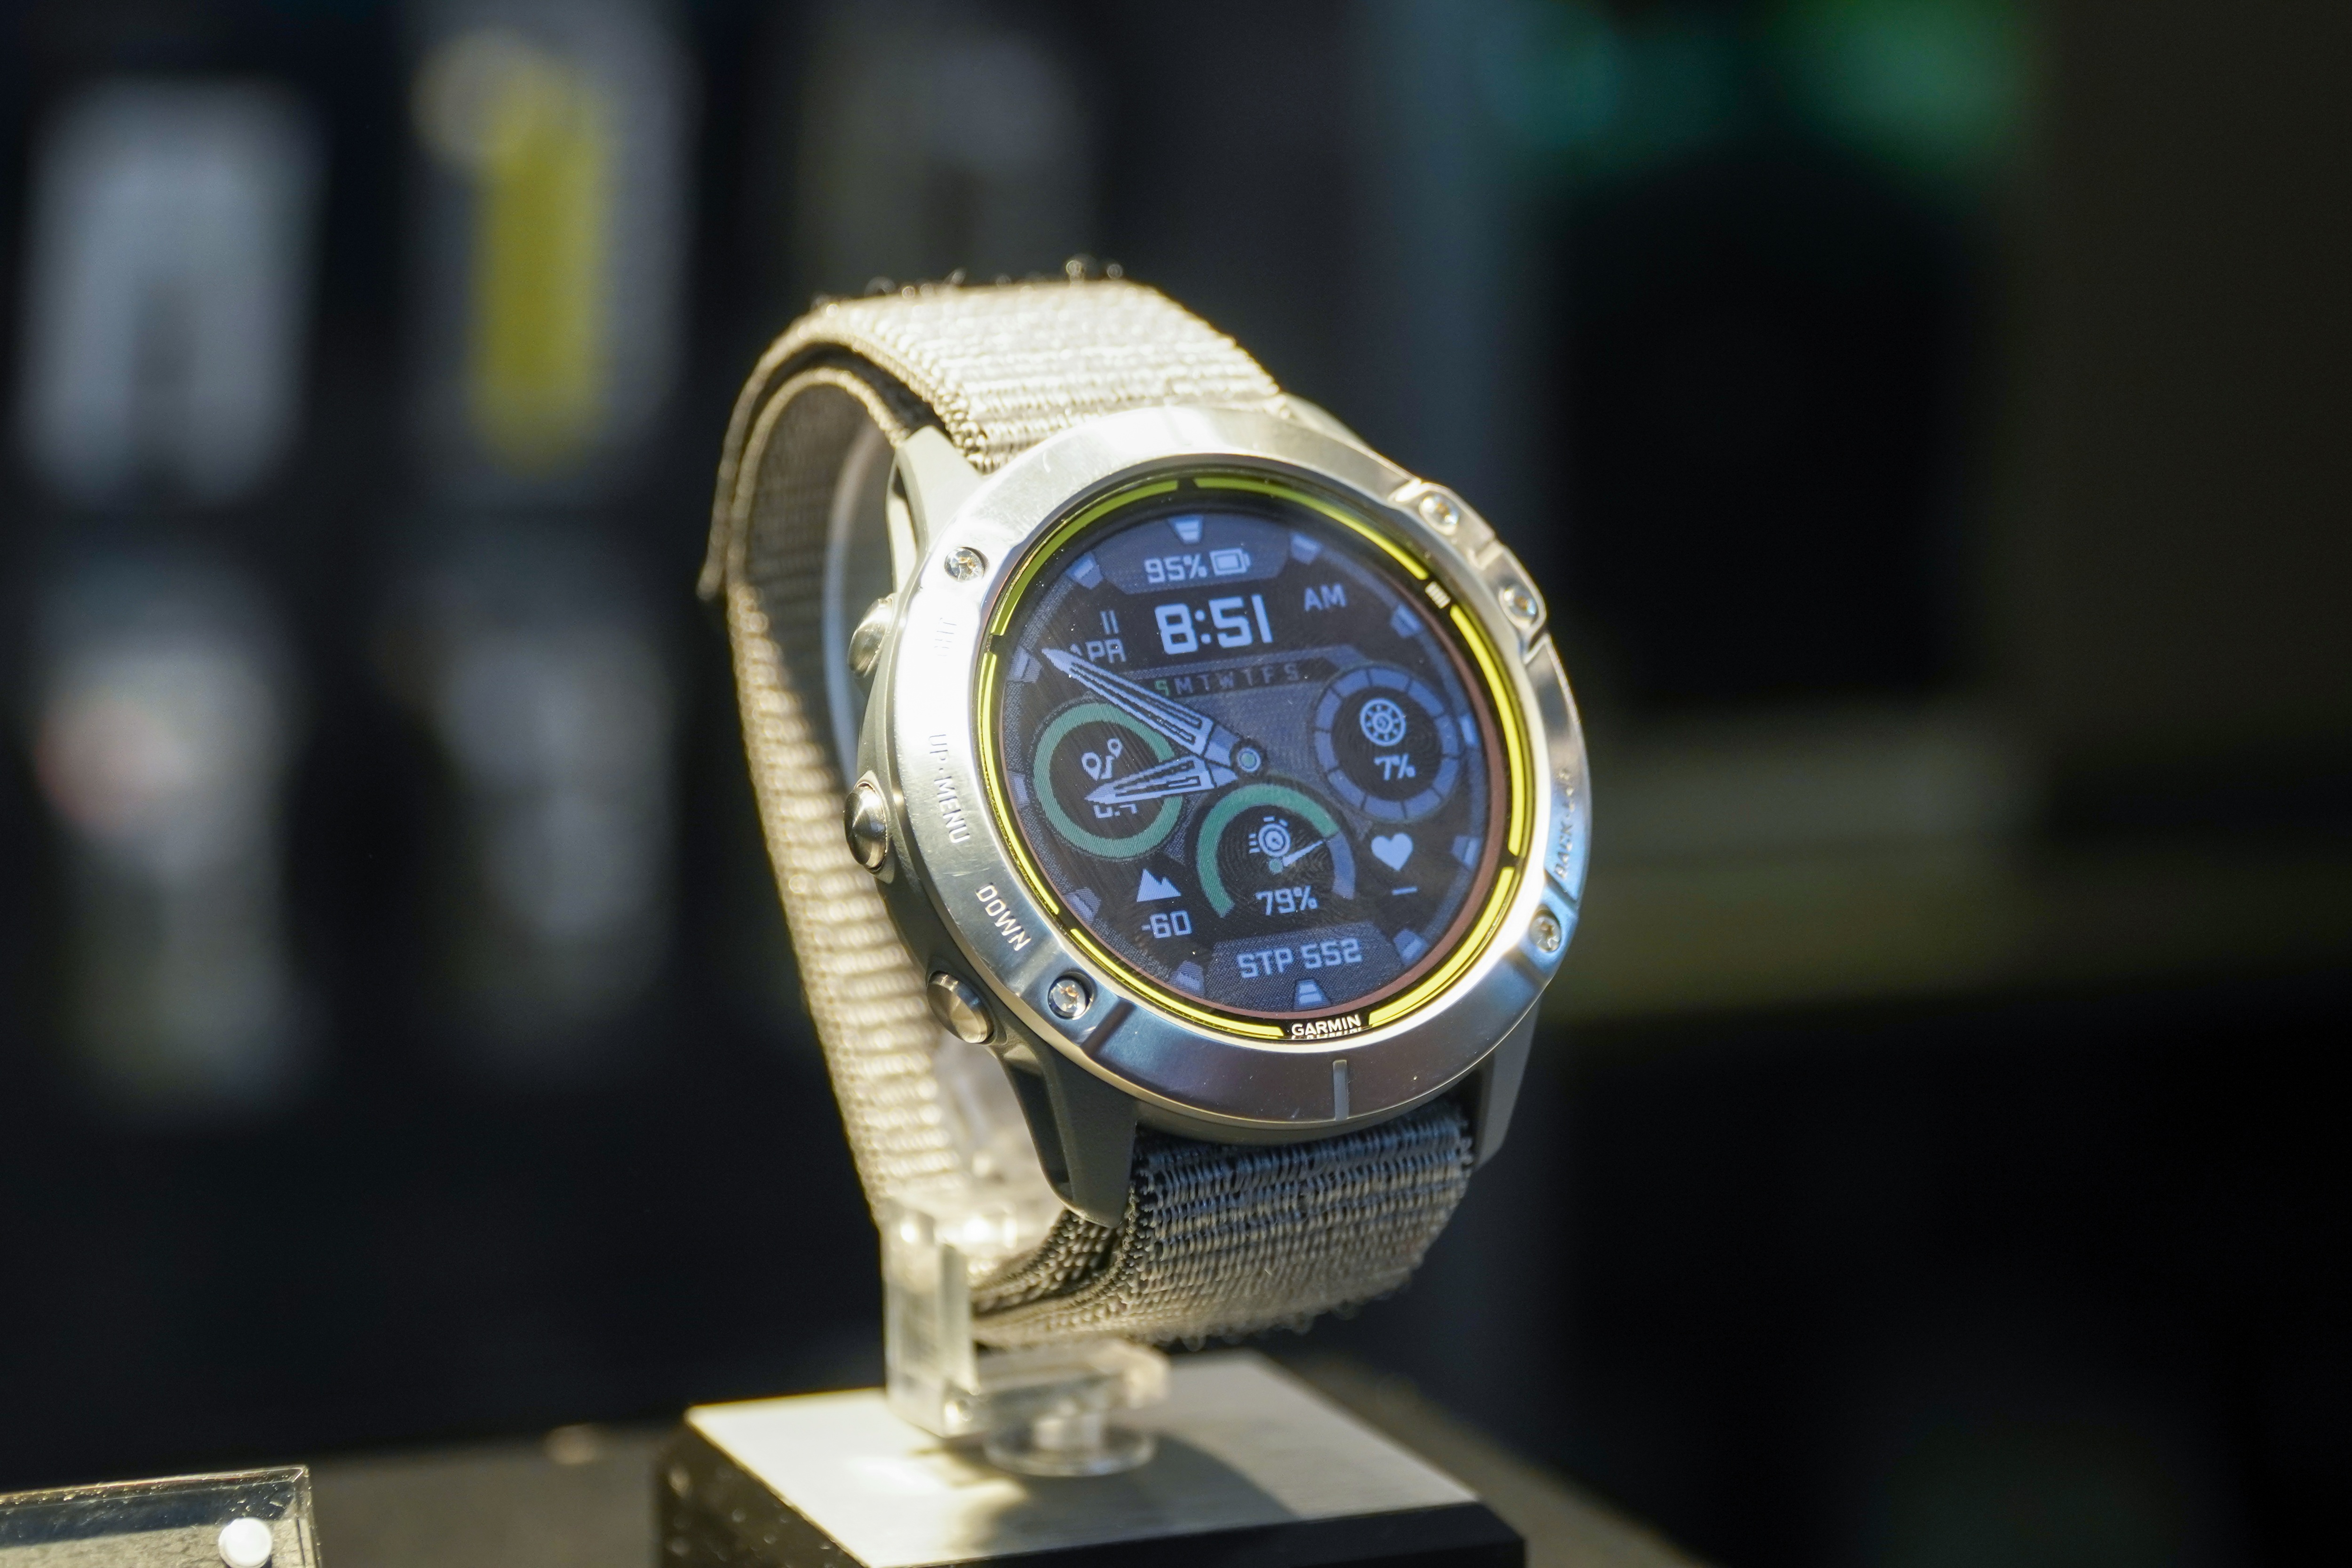 Smartwatch pin 65 ngày, giá 20 triệu đồng về Việt Nam